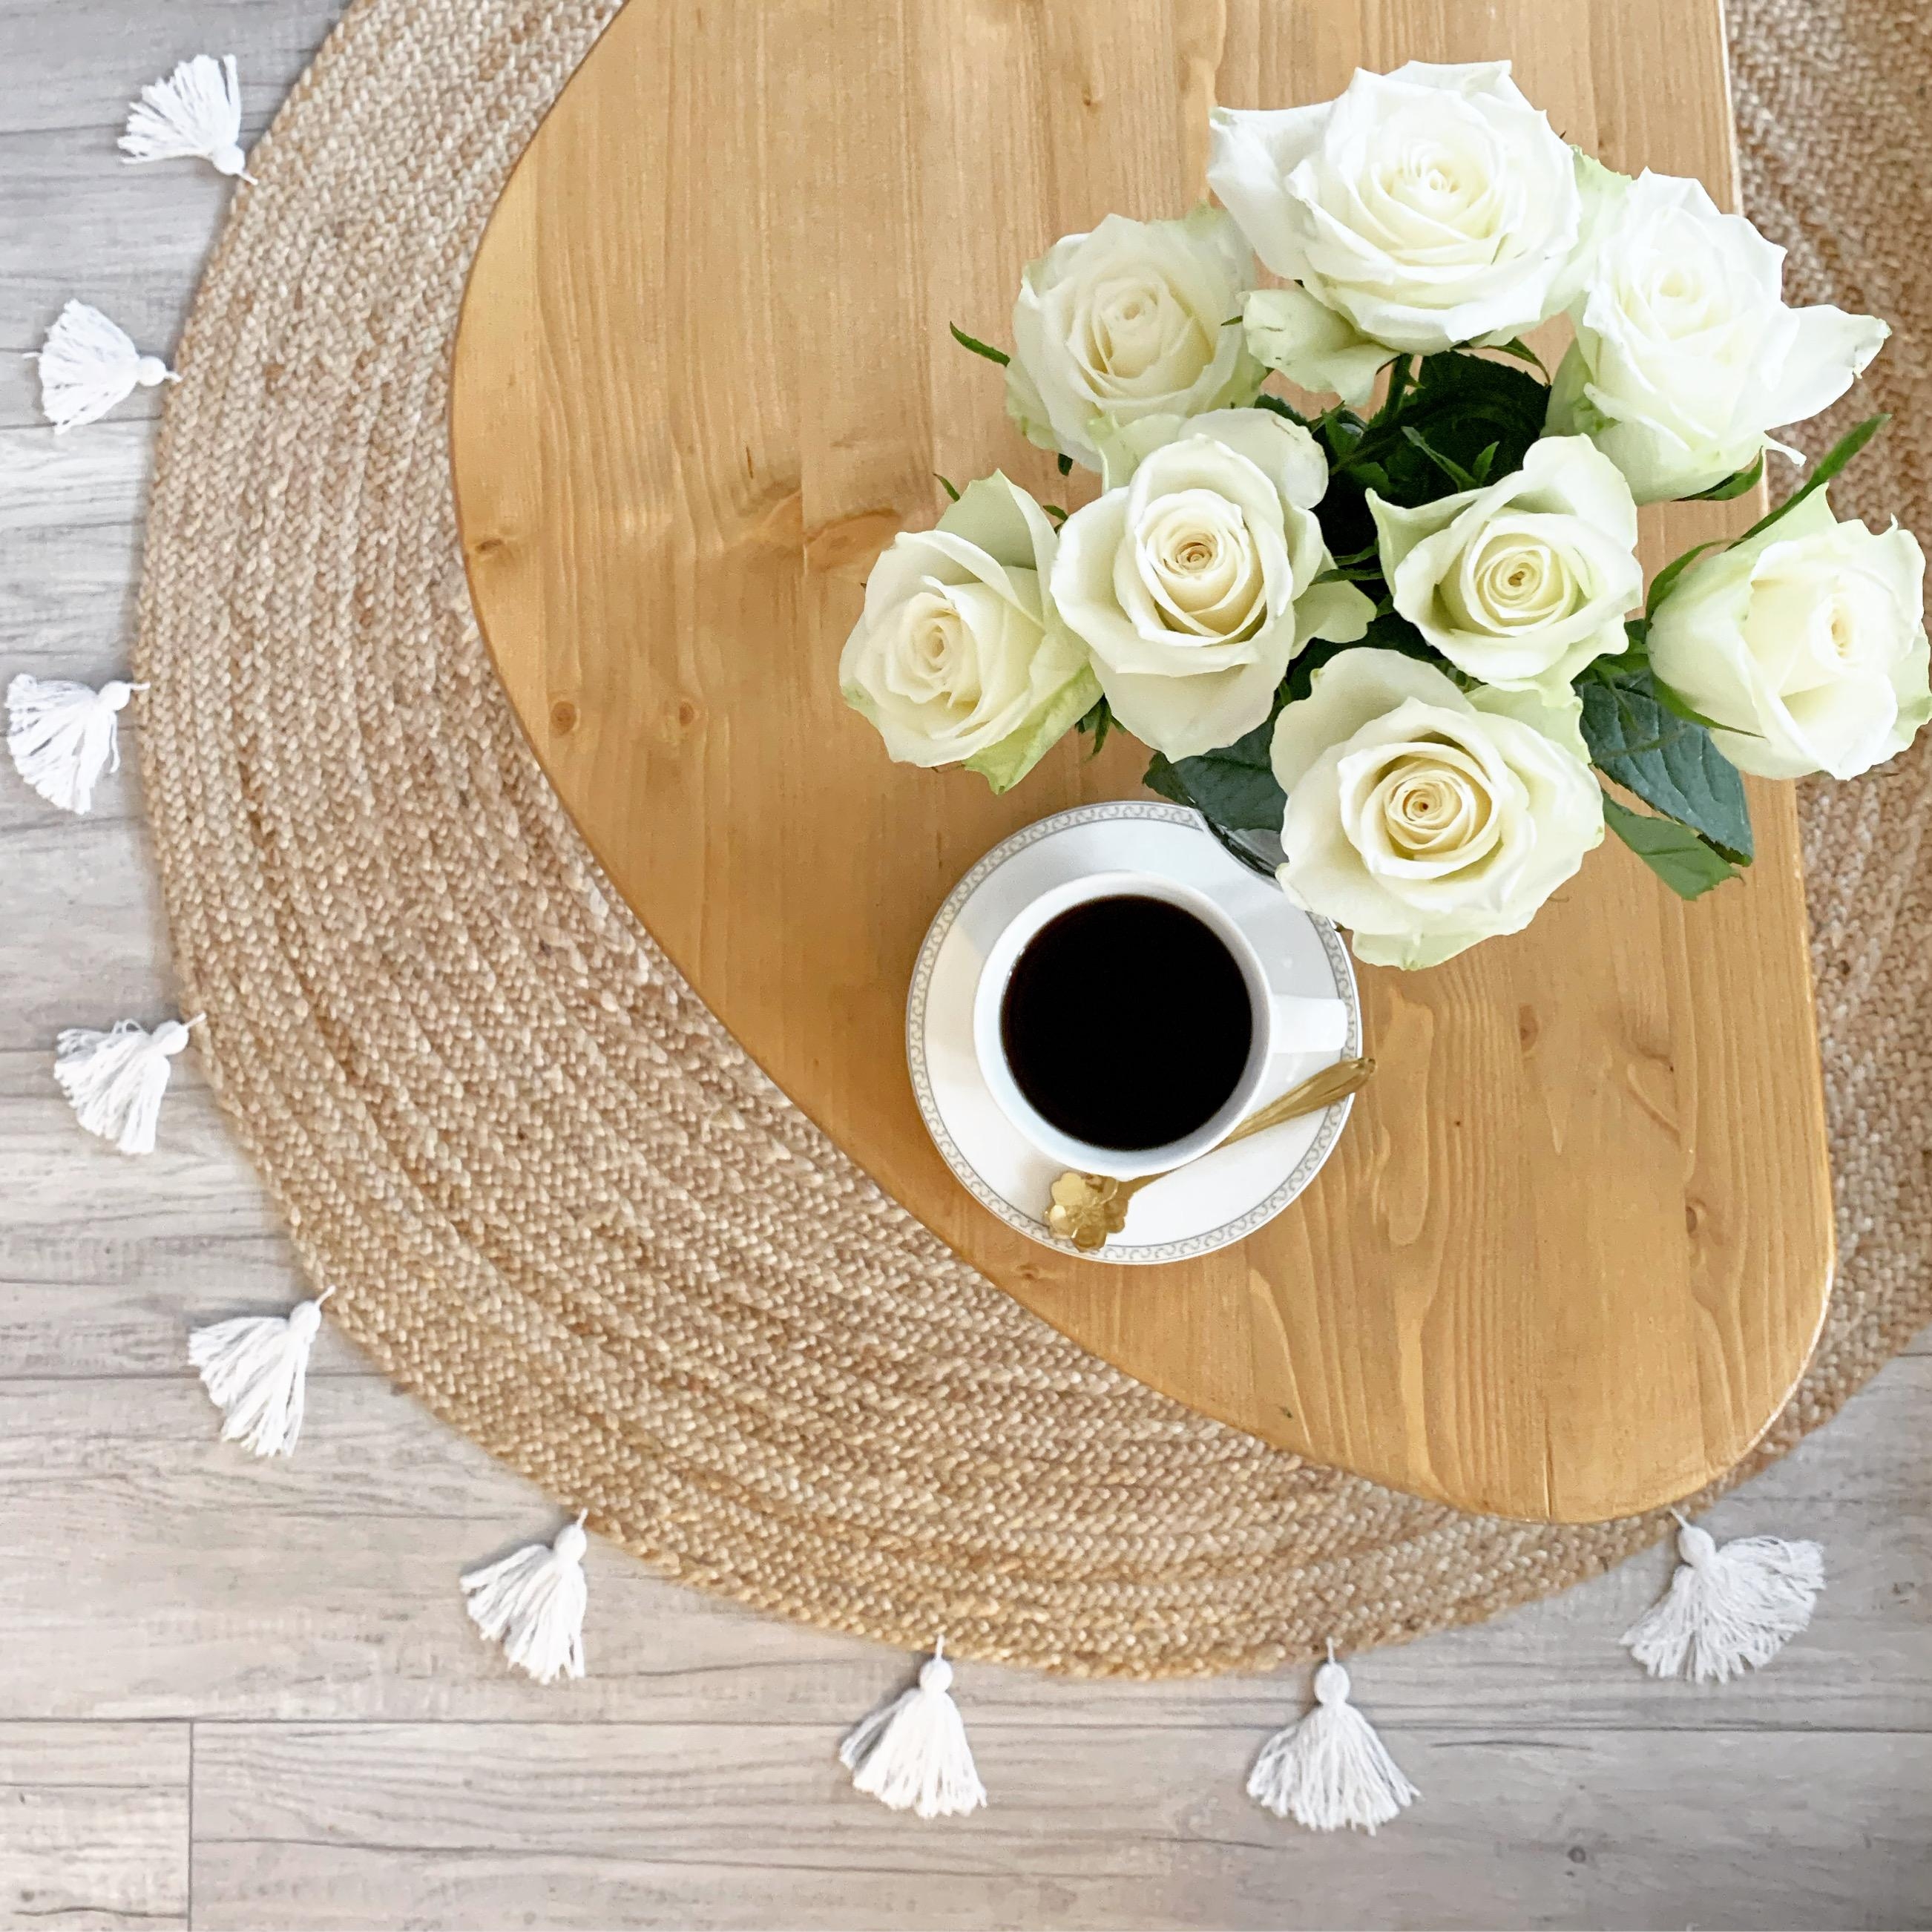 Kaffeezeit.
#morgenroutine #kaffeezeit #rosenliebe #frischeblumen #bohovibes #diymöbel #rosen #kaffeeliebe